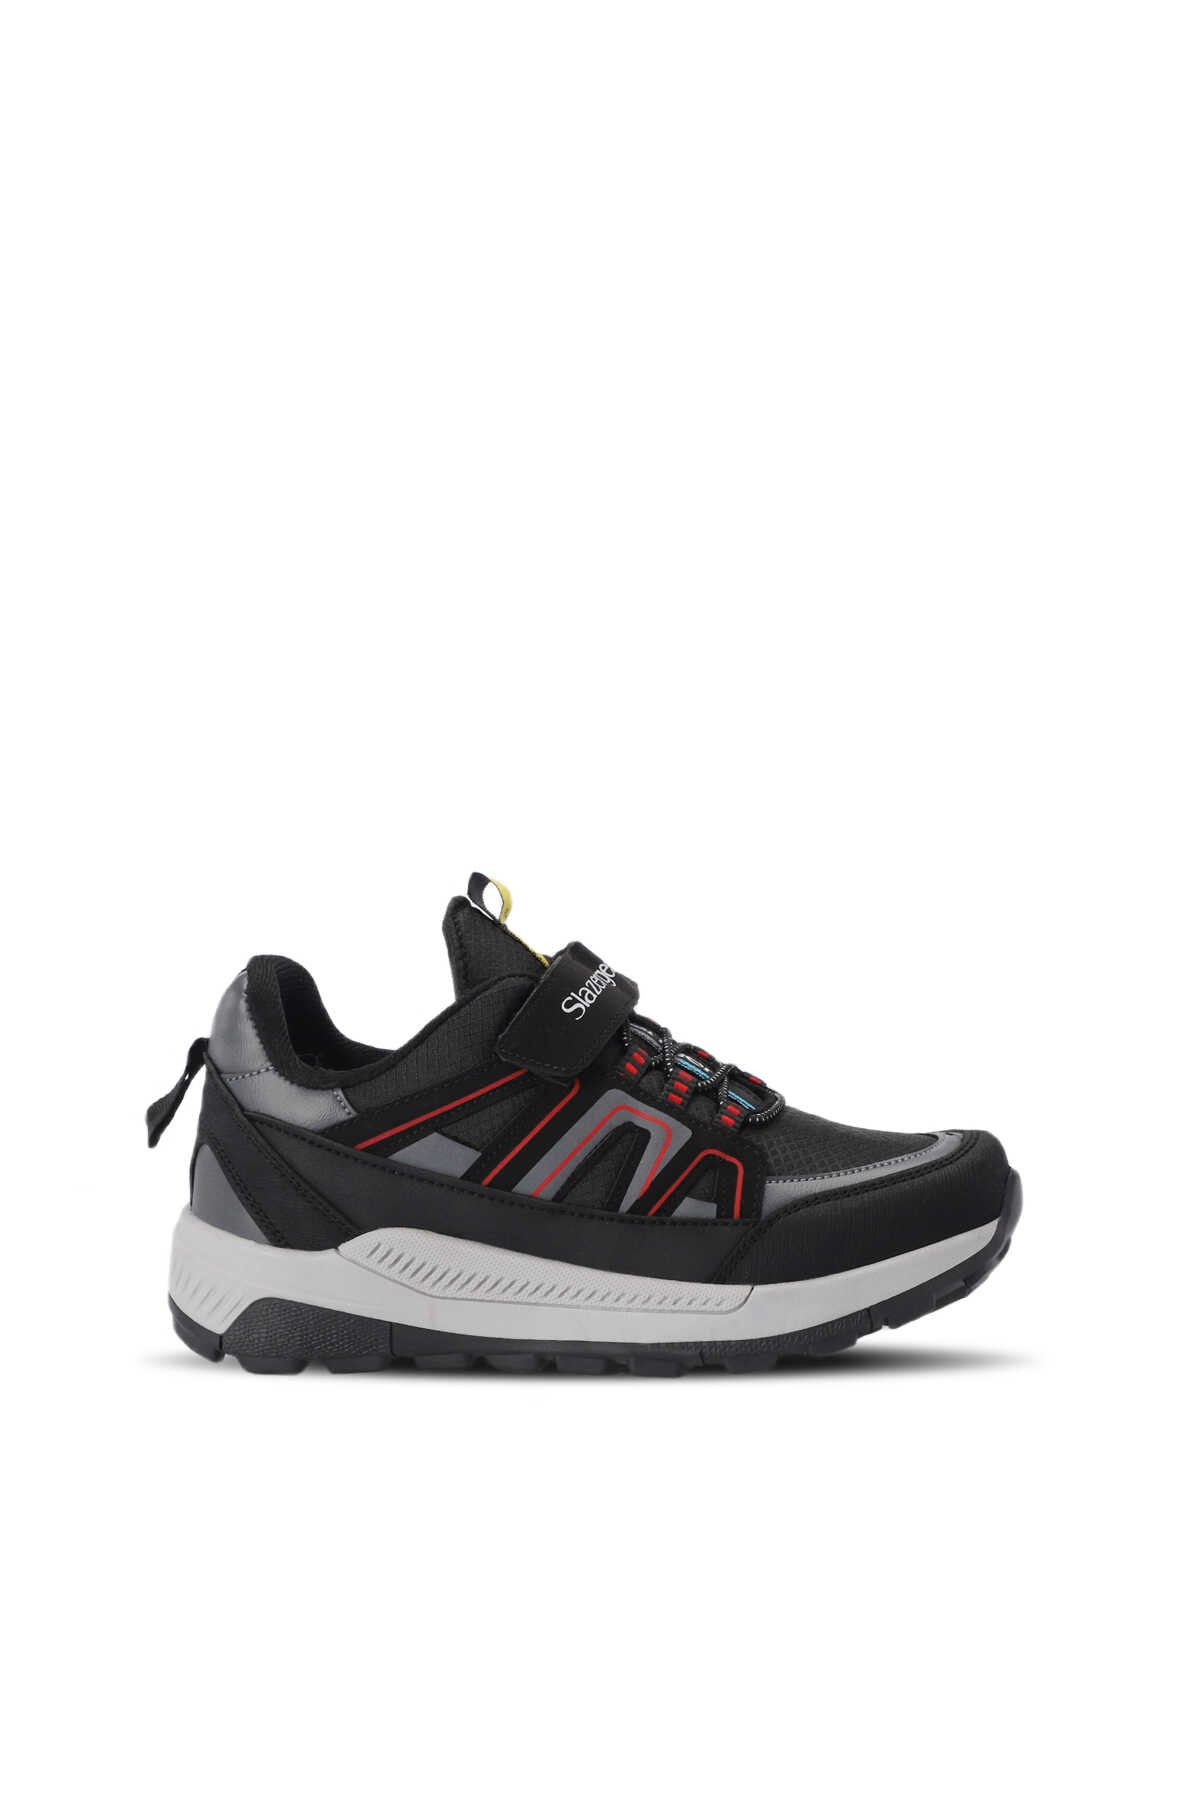 Slazenger - Slazenger KROSS KTN Sneaker Unisex Çocuk Ayakkabı Siyah / Kırmızı